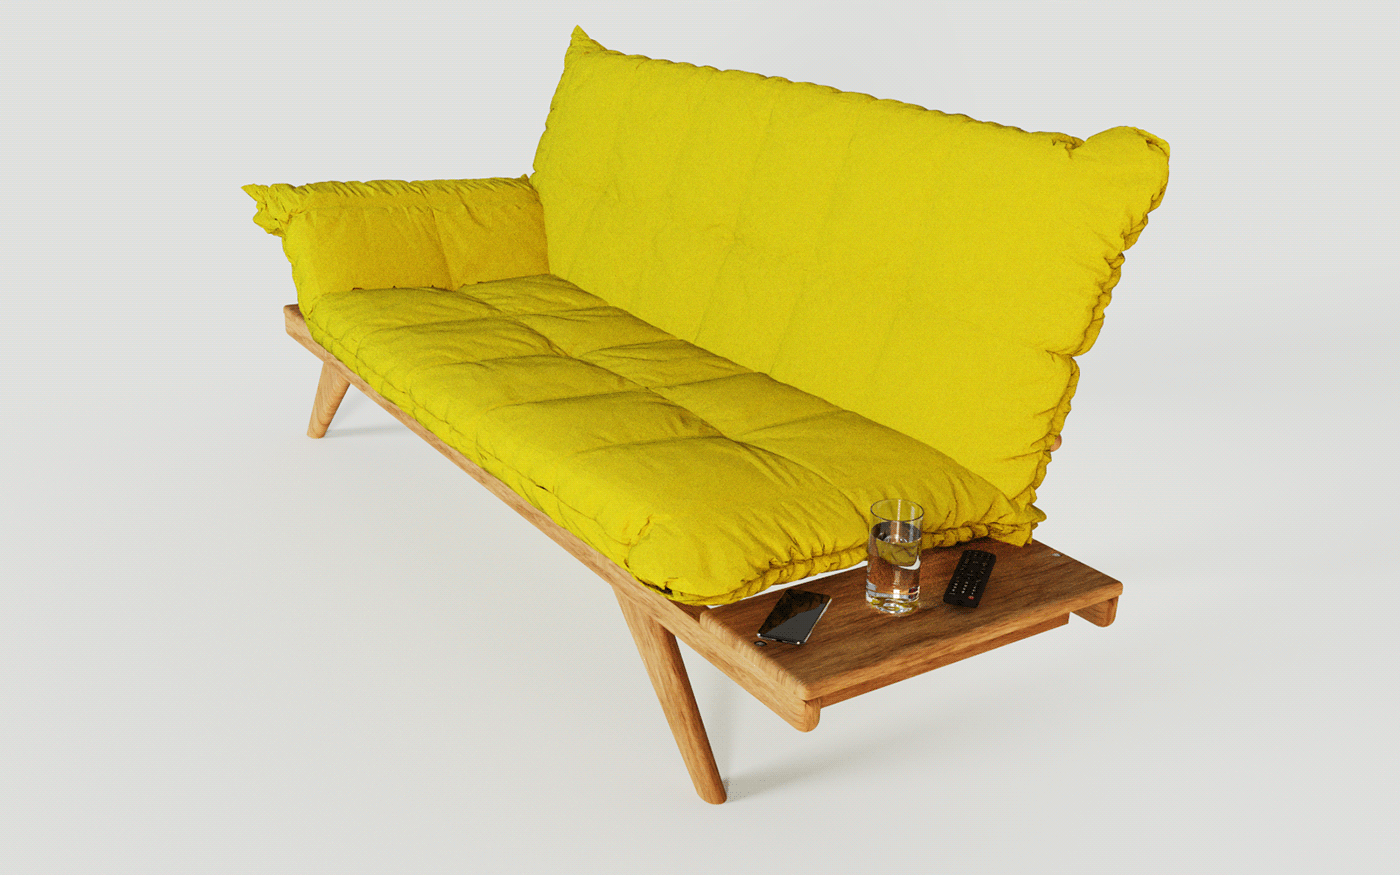 Couch design furniture Futon hardwood interiores mobiliario sofa urca yellow